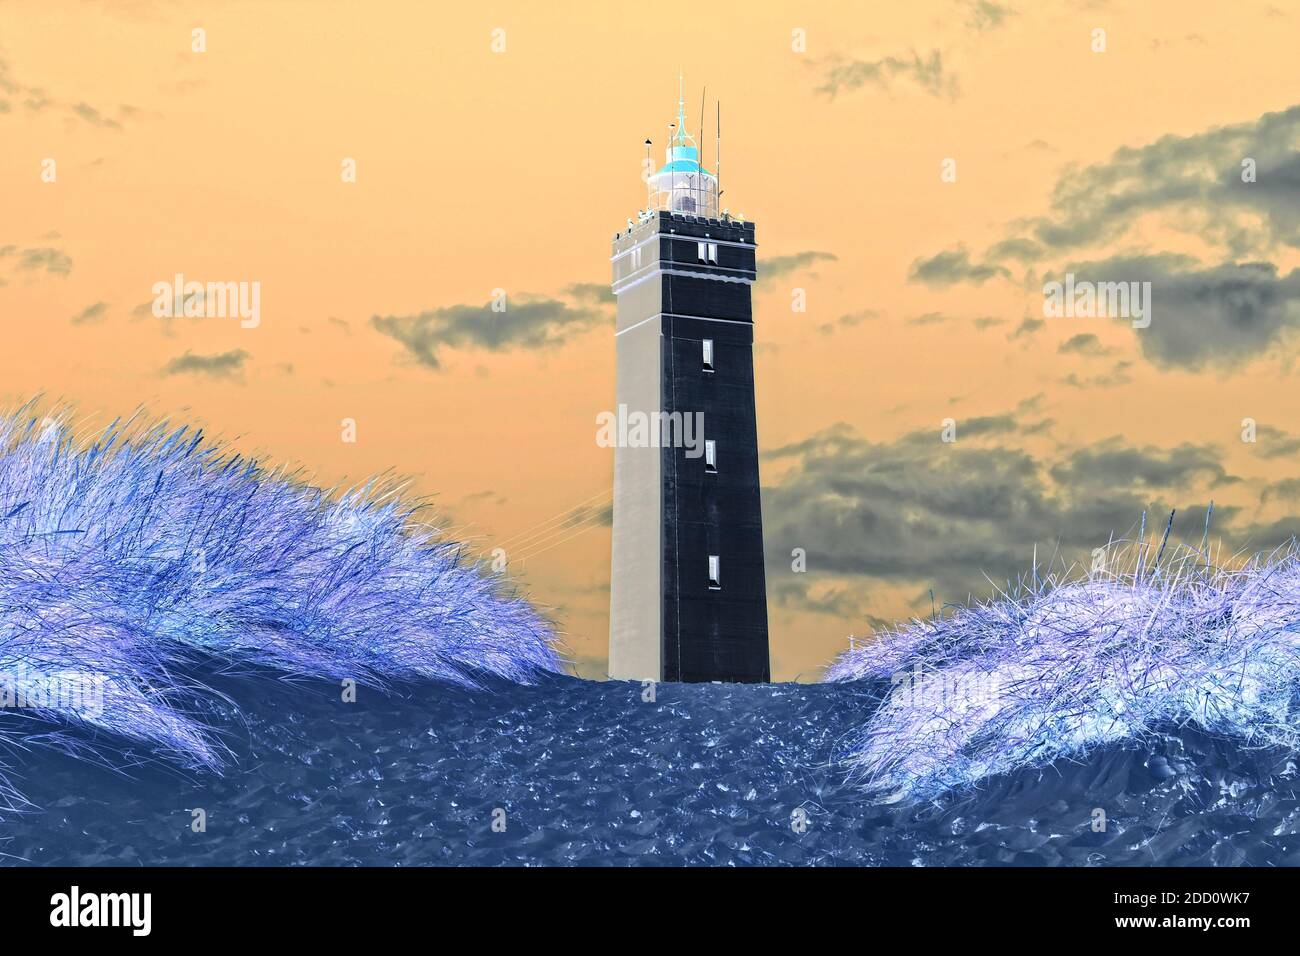 Immagine atmosferica di un faro in Danimarca sulla costa del mare del nord. Sono state apportate delle modifiche al colore e altre modifiche all'immagine originale. Foto Stock